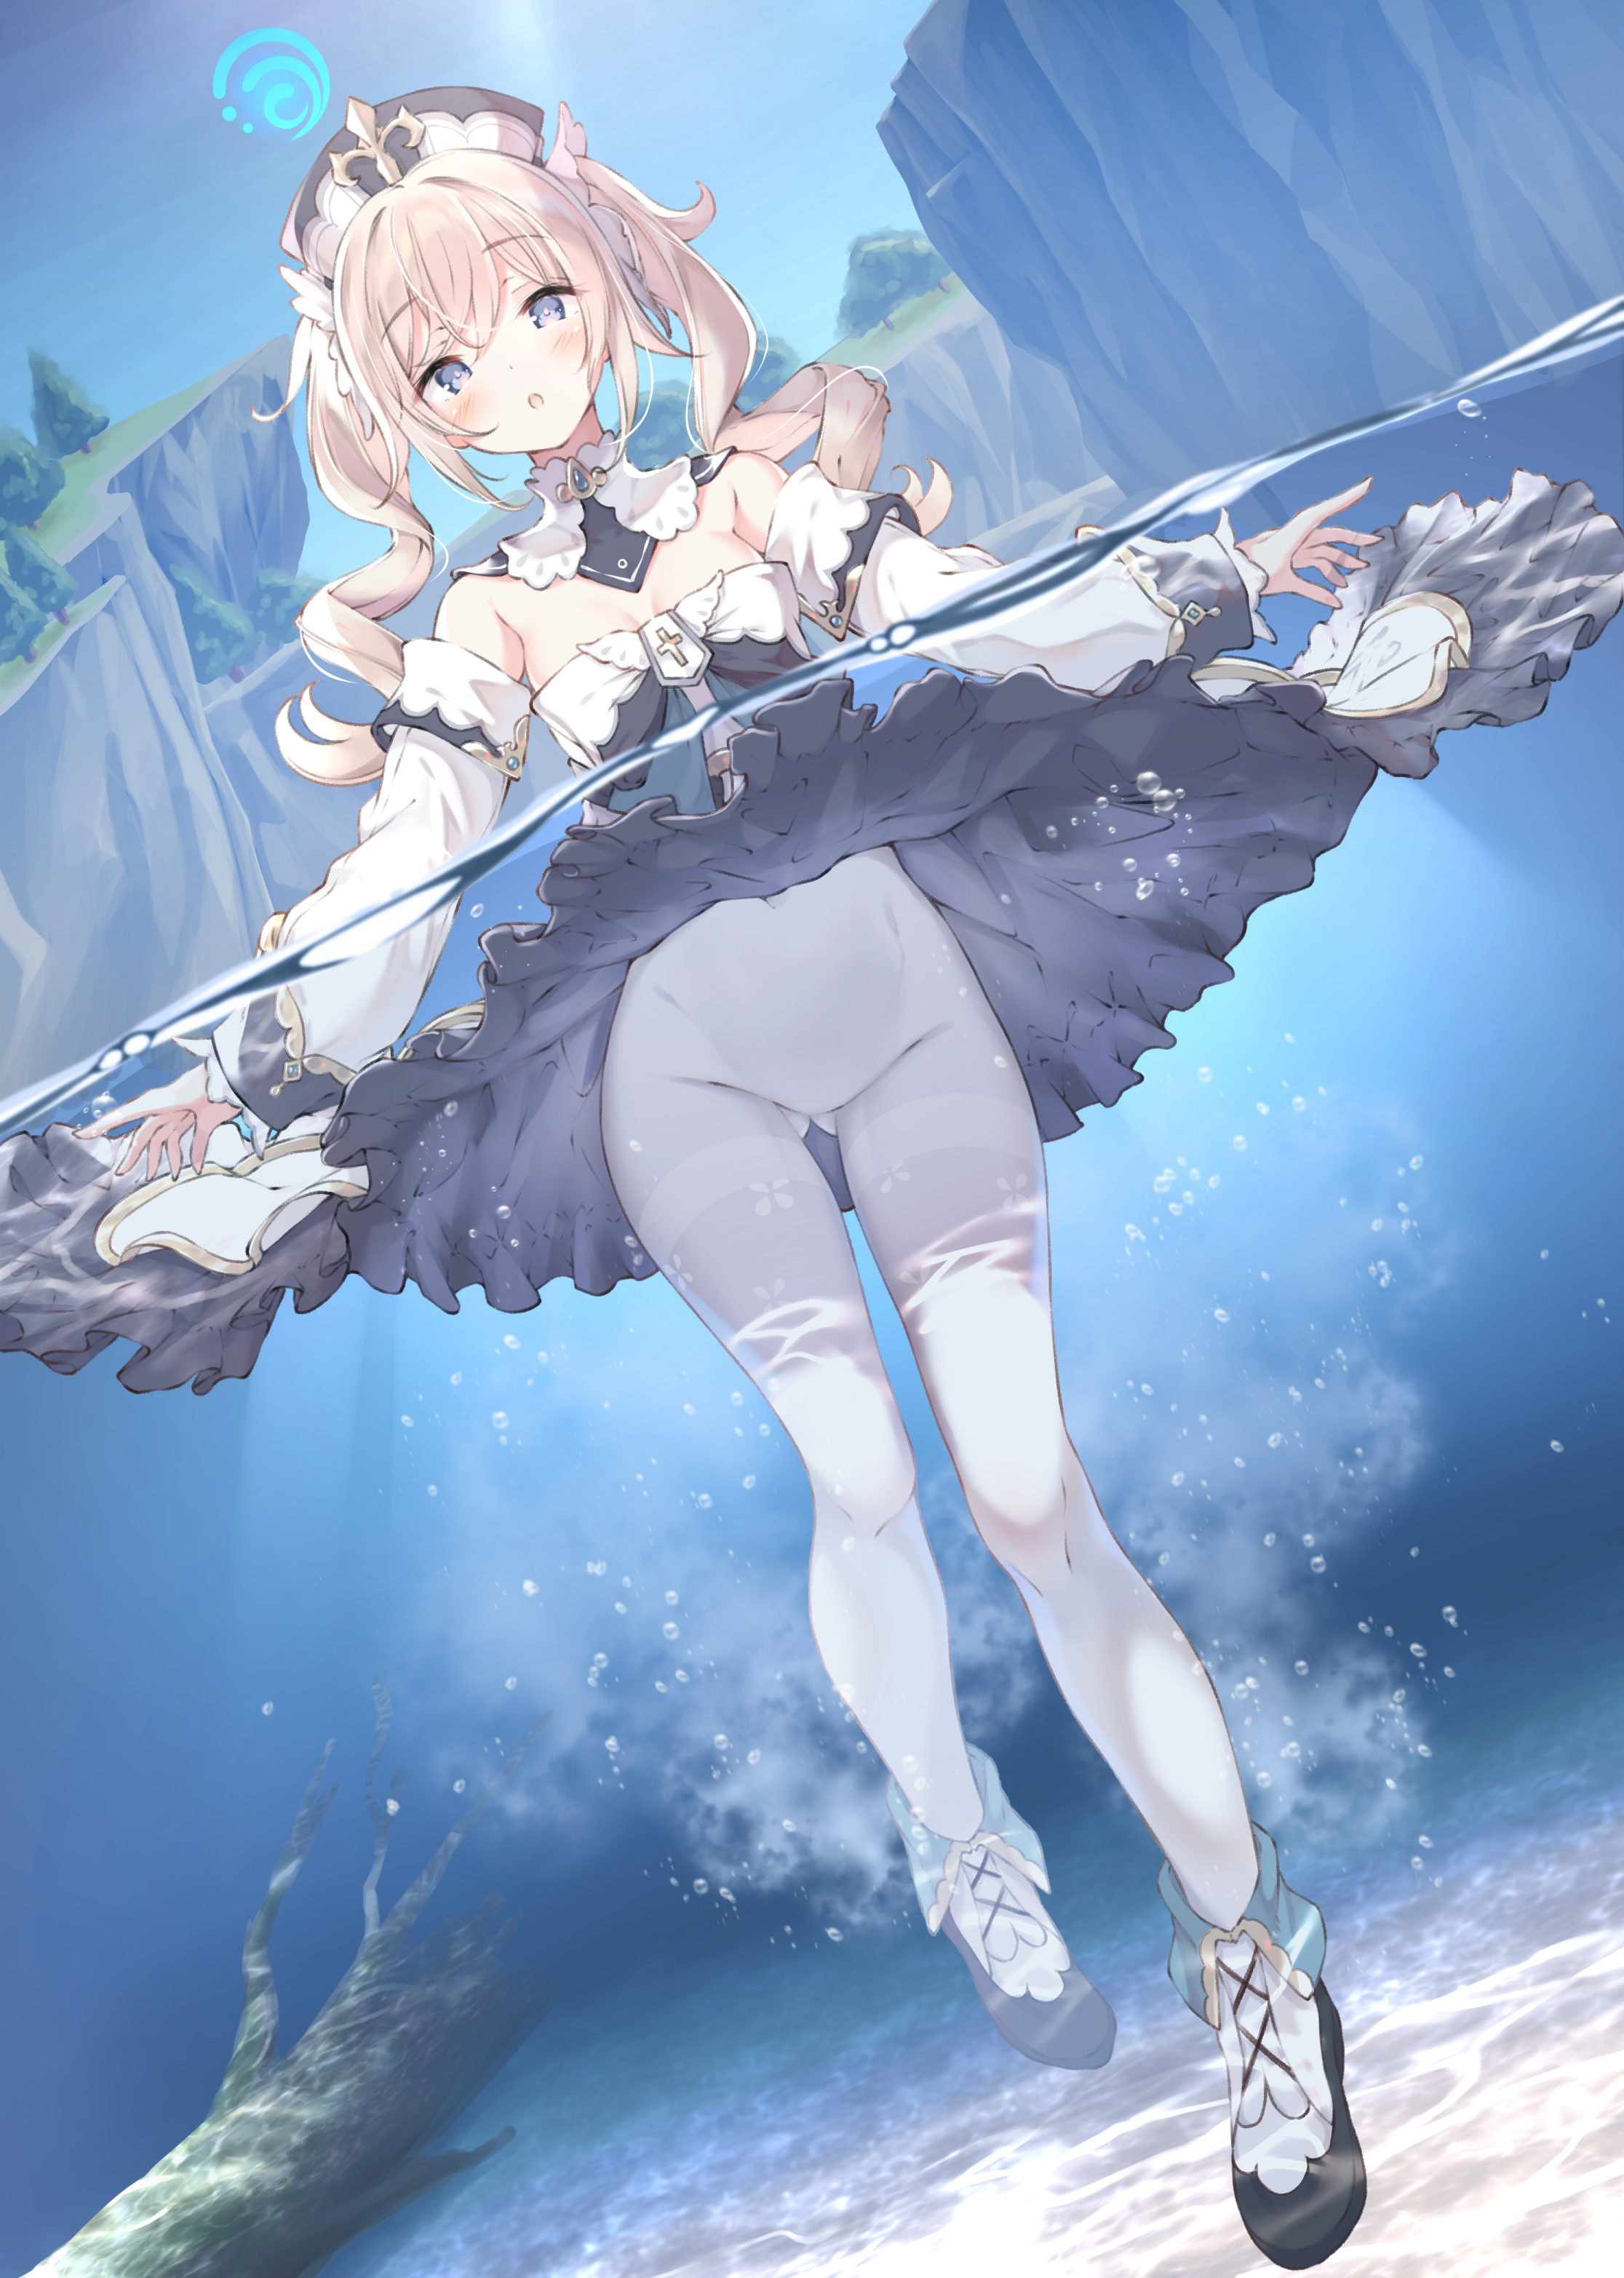 Anime 2232x3131 Genshin Impact Barbara (Genshin Impact) wet anime artwork anime girls 2D water in water upskirt underwater